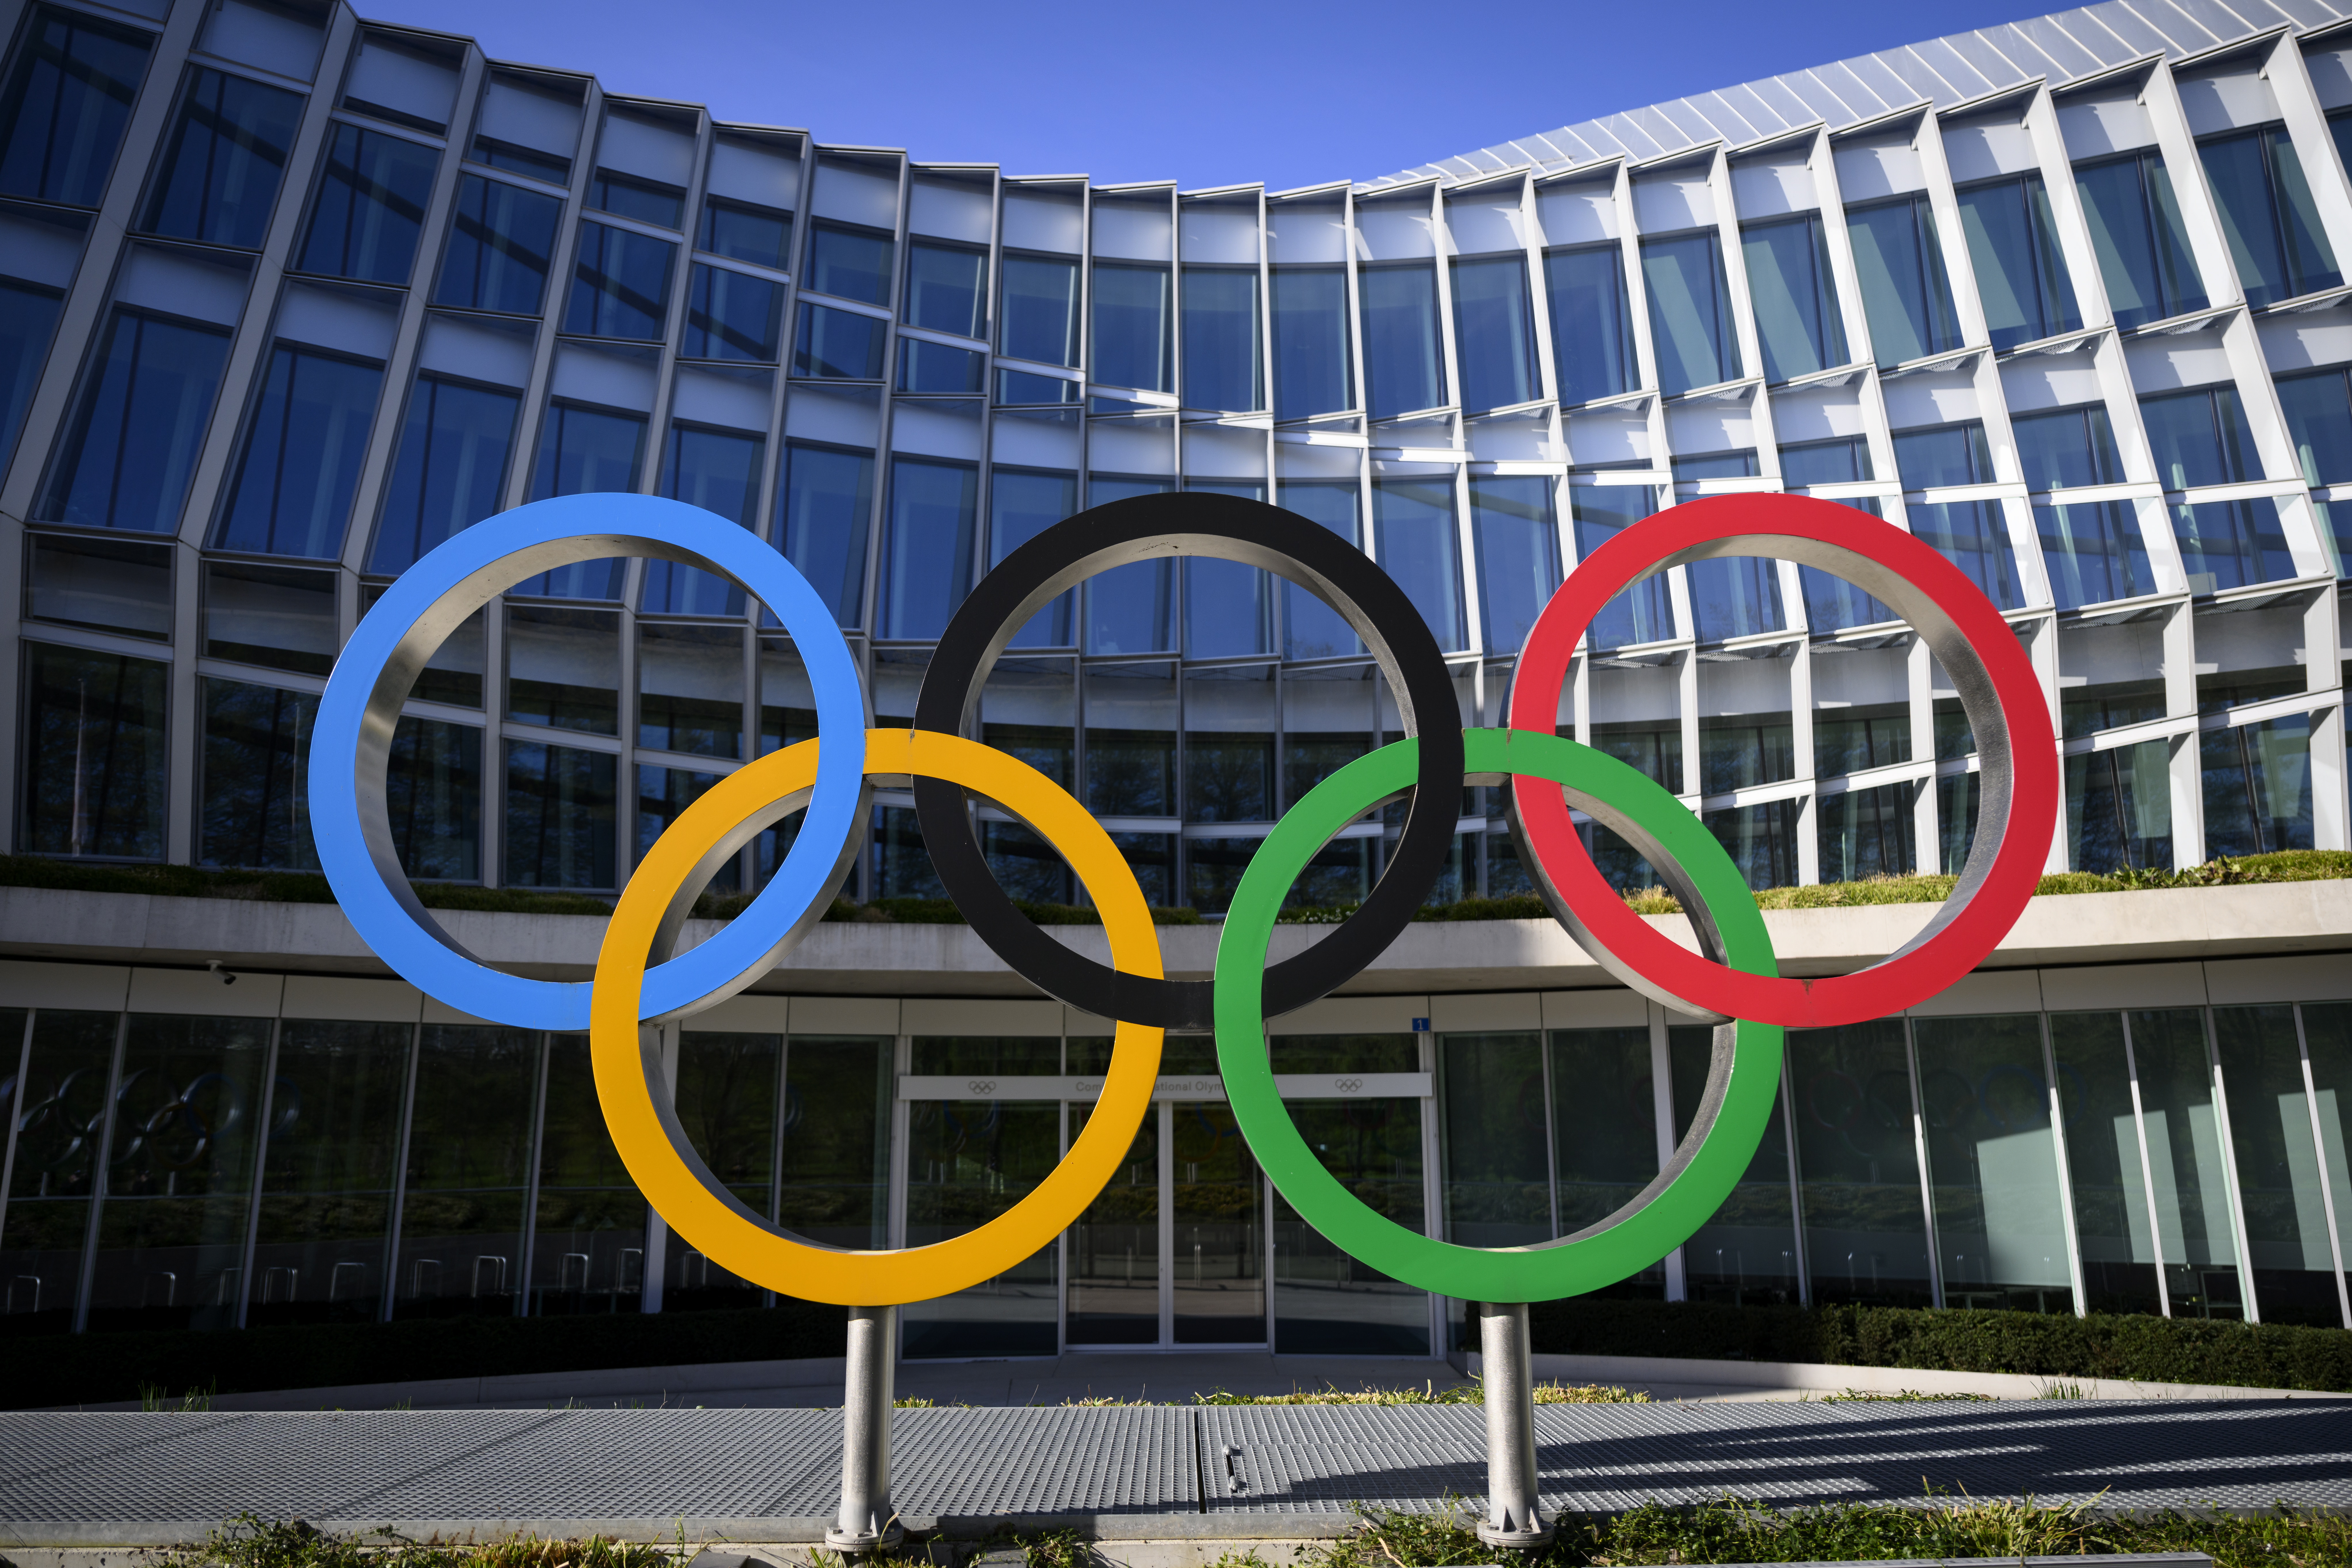 Atletas russos recorrem à CAS para poderem participar dos Jogos Olímpicos